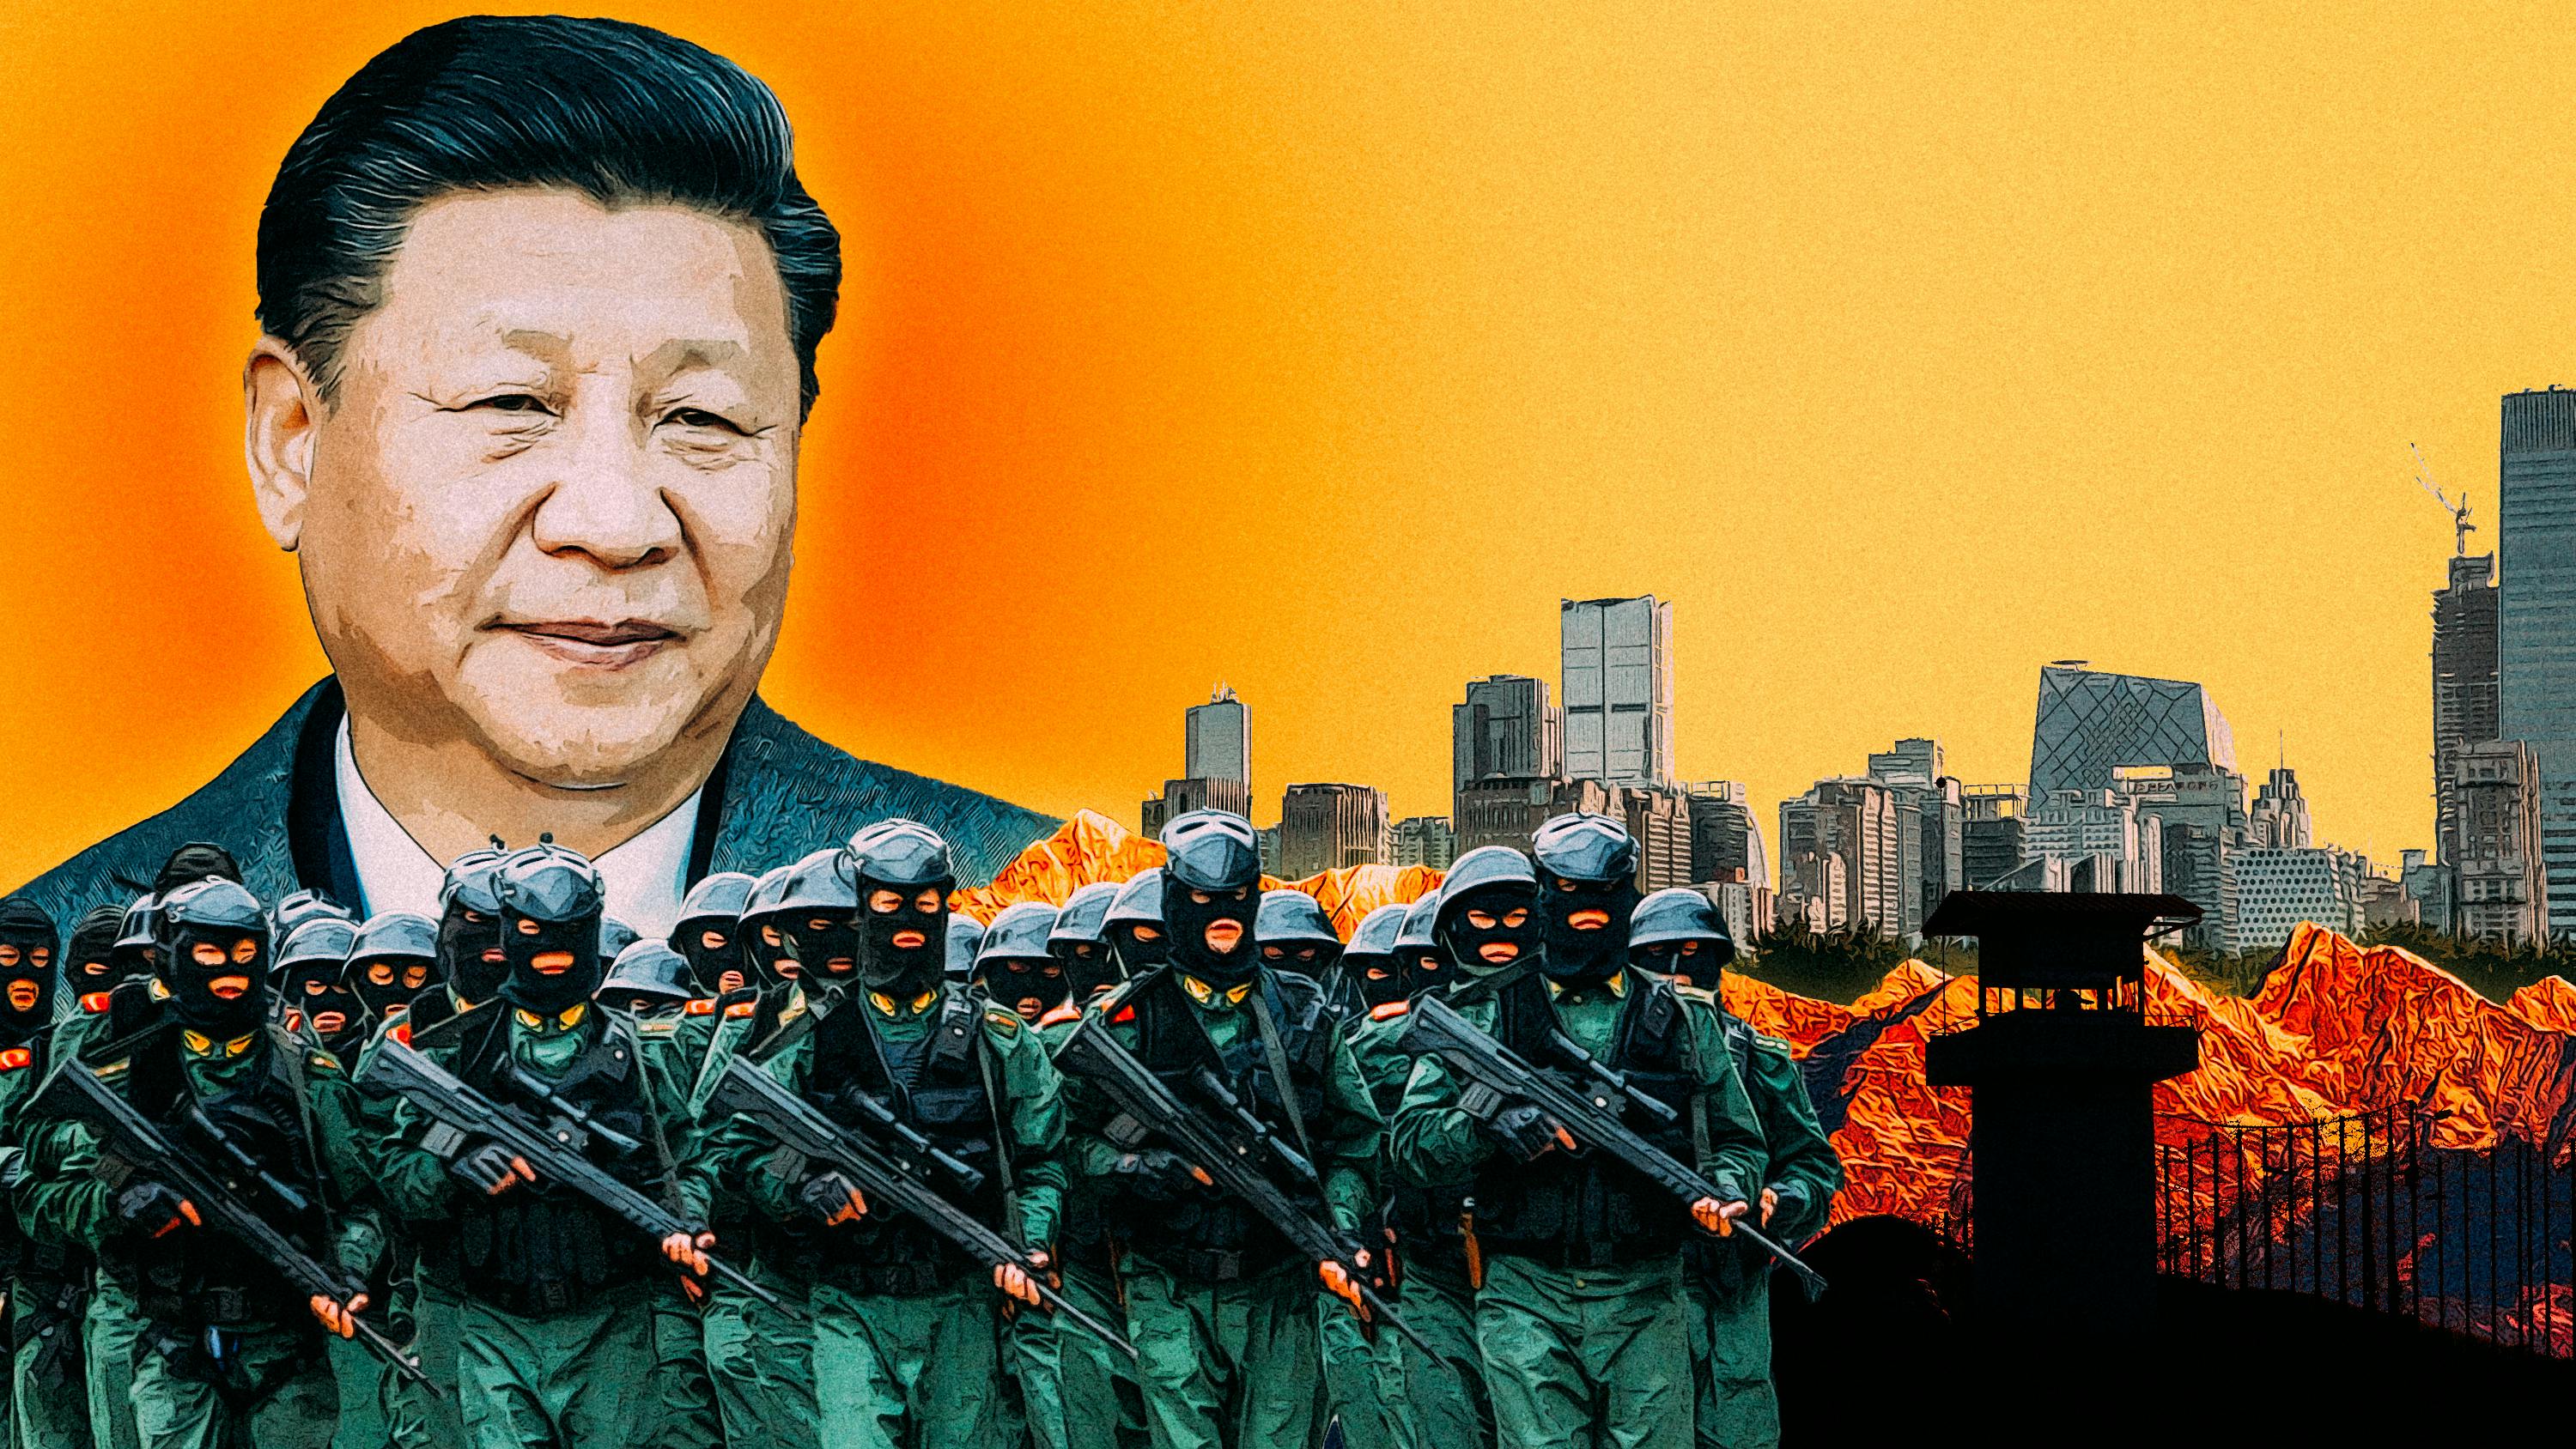 Die Illustration ist im Stil alter Chinesisch-Sovietischer Propaganda gehalten. Xi Jinpings Gesicht blickt von links oben herab. Im Hintergrund befinden sich die Skyline einer Stadt und eine Bergkette, davor sind Soldaten und ein Wachturm zu sehen.